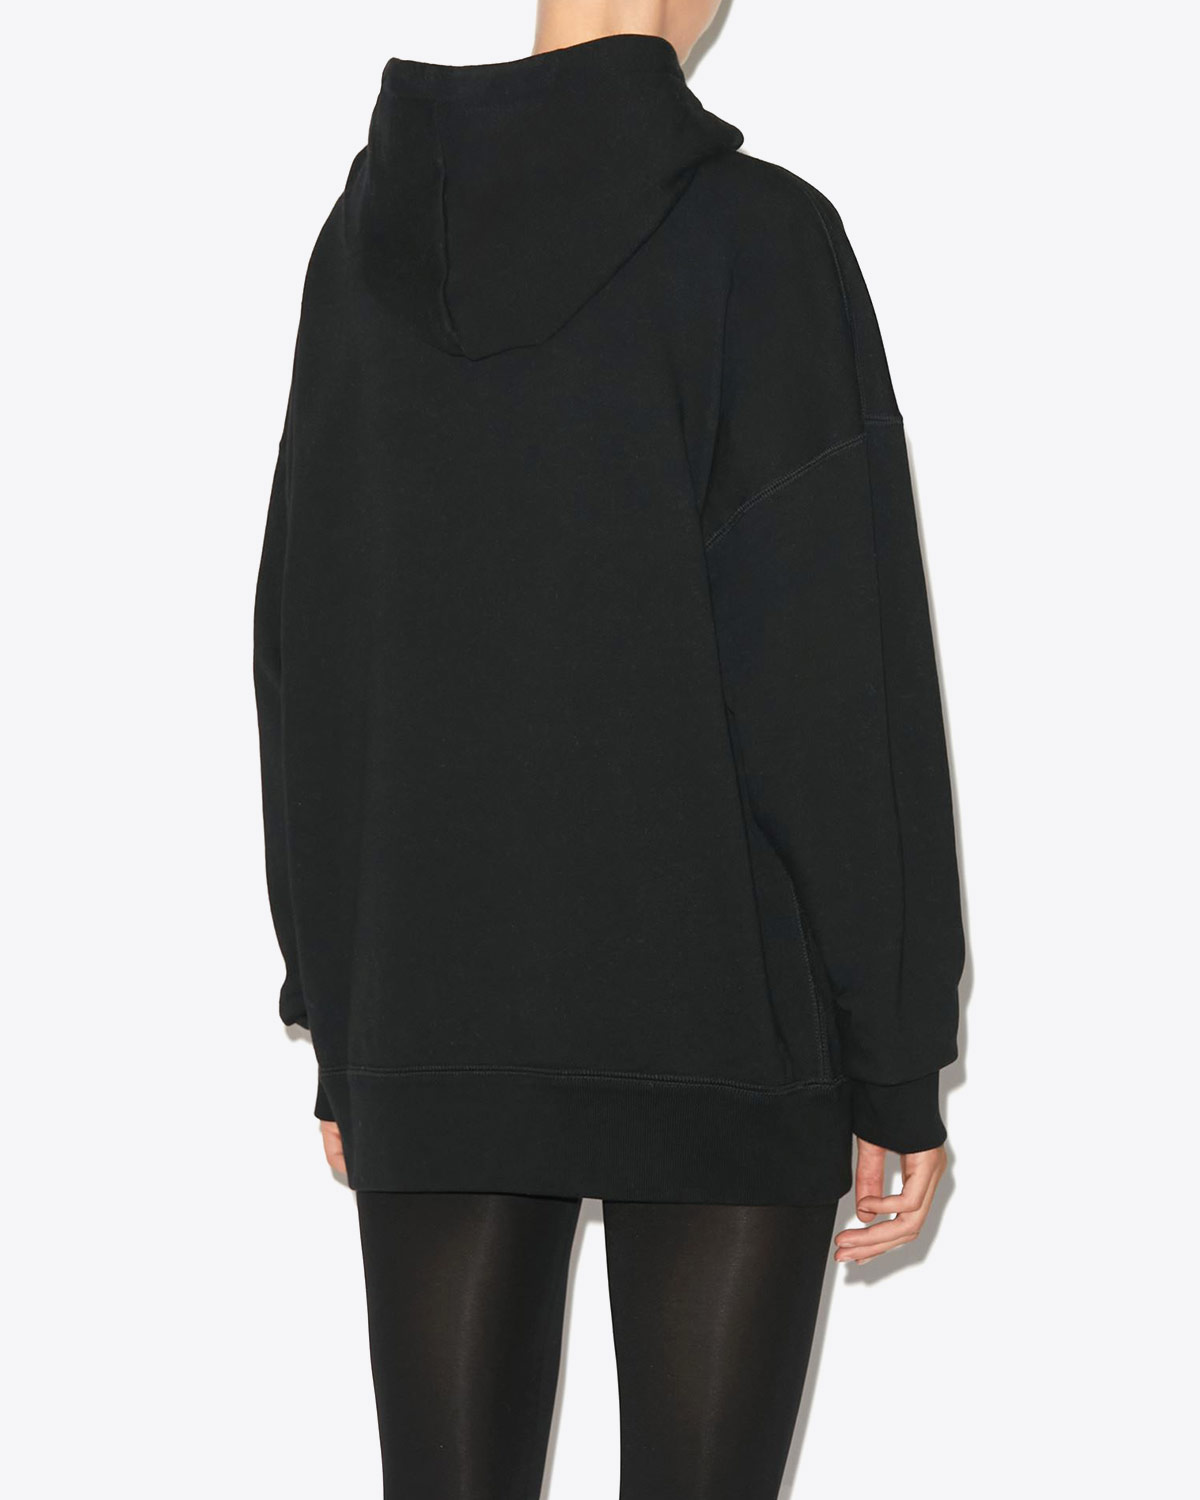 Sweat-shirt oversize à capuche noir logo argent Mansel Isabel Marant Etoile. Porté de dos.